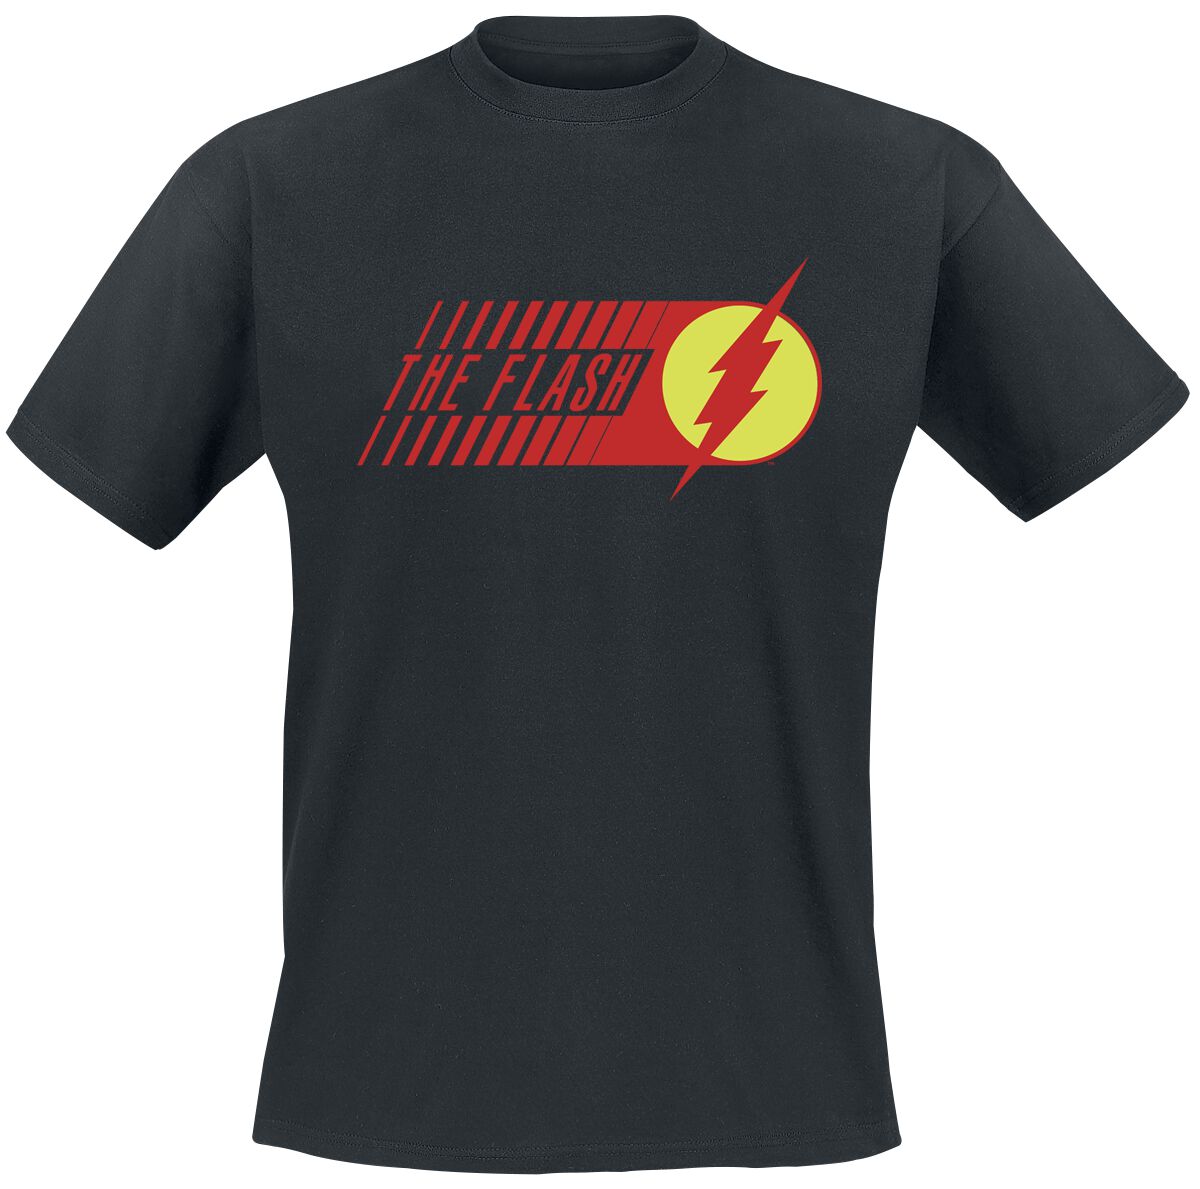 The Flash - DC Comics T-Shirt - Flash - Starlabs - S bis XXL - für Männer - Größe XXL - schwarz  - EMP exklusives Merchandise!